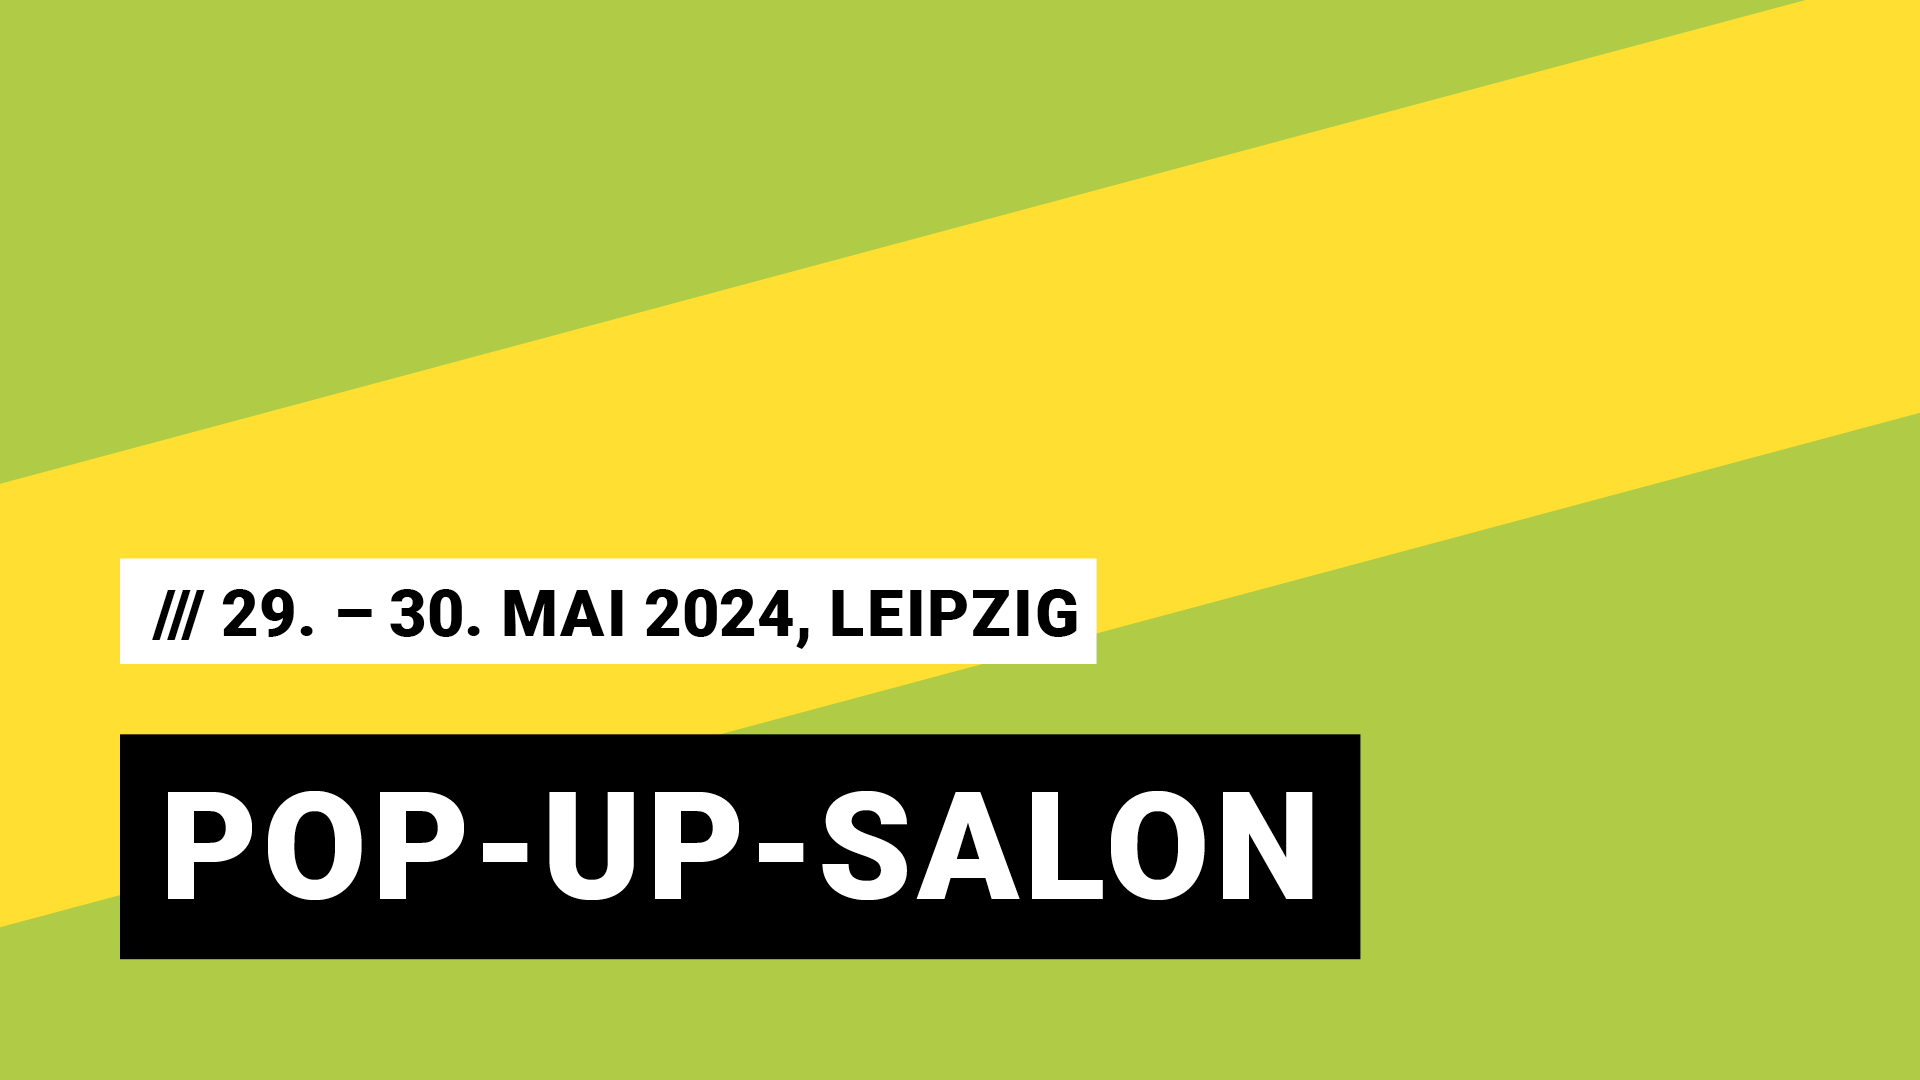 Titelbild Veranstaltung Popup Salon mit Datum 29. und 30. Mai 2024, auf dem MACHN Festival in Leipzig